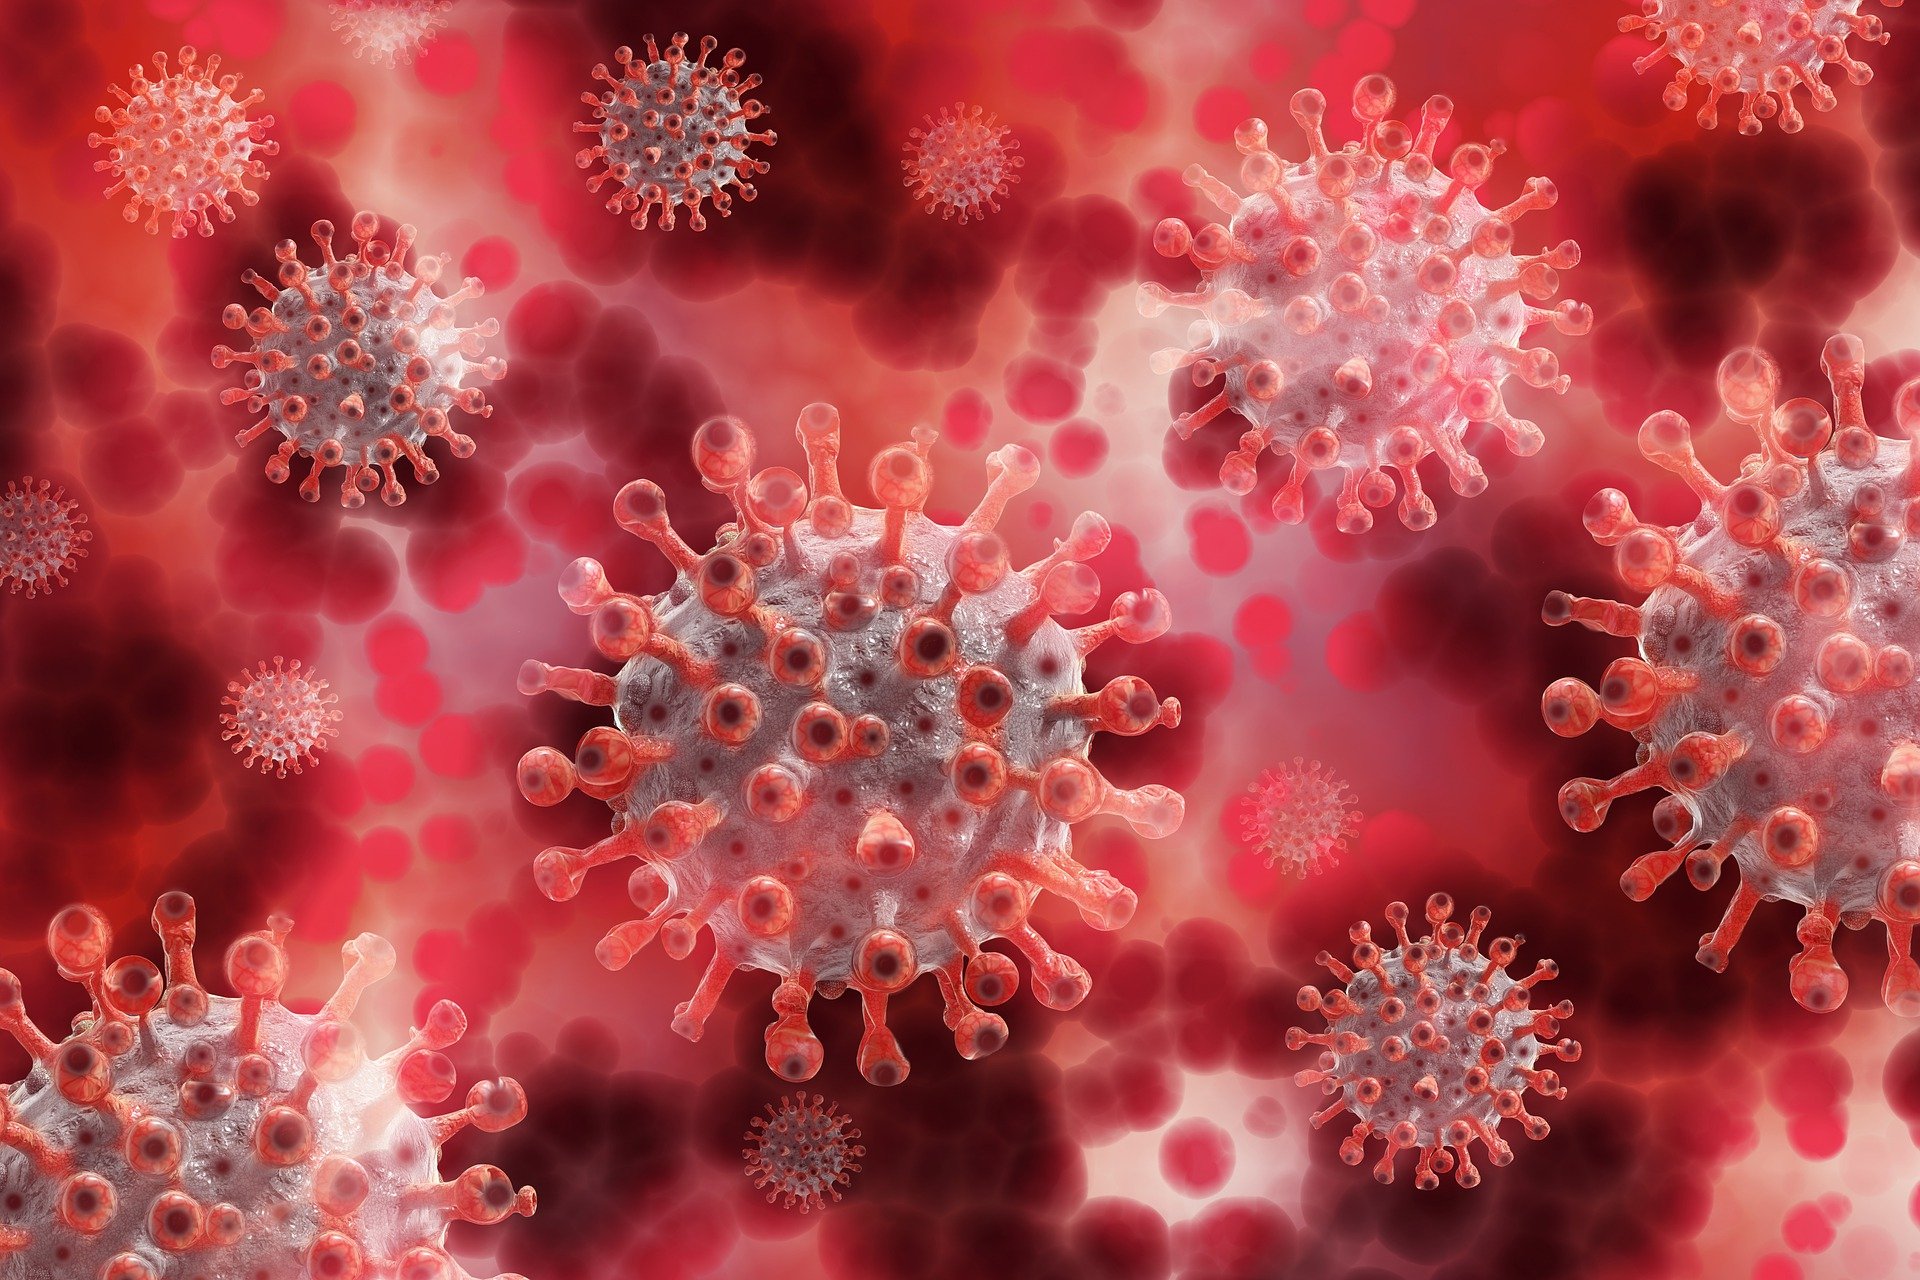 Coronavirus Sicilia, il bollettino del 28 gennaio: 994 nuovi casi, 37 vittime. Ancora Catania e Palermo le più colpite